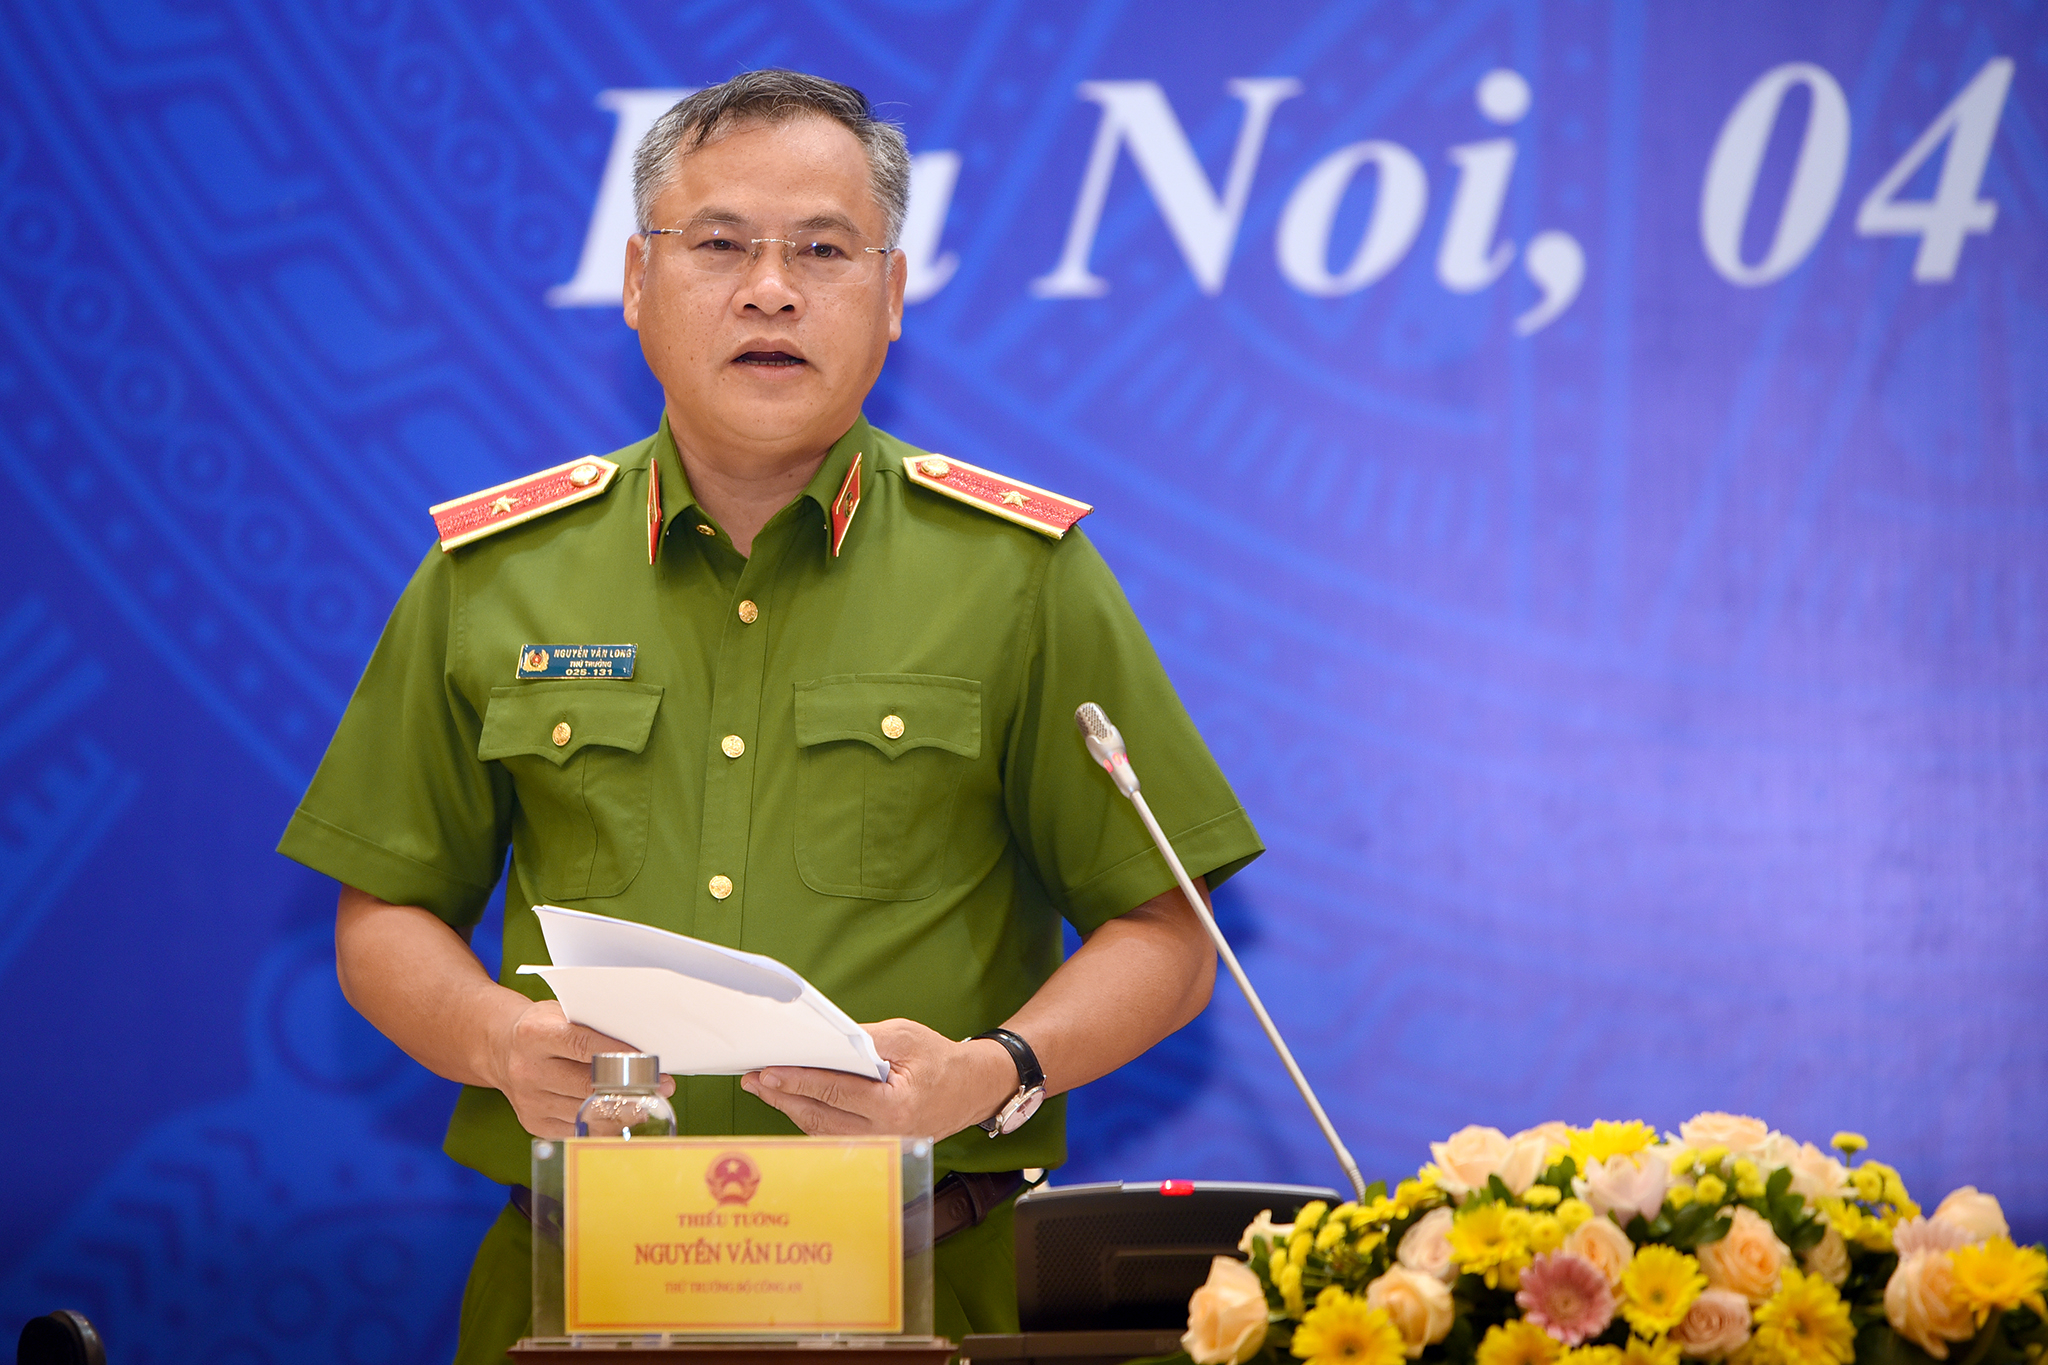 Thiếu tướng Nguyễn Văn Long, Thứ trưởng Bộ Công an trả lời báo chí tại buổi công bố. Ảnh: Tùng Đinh.